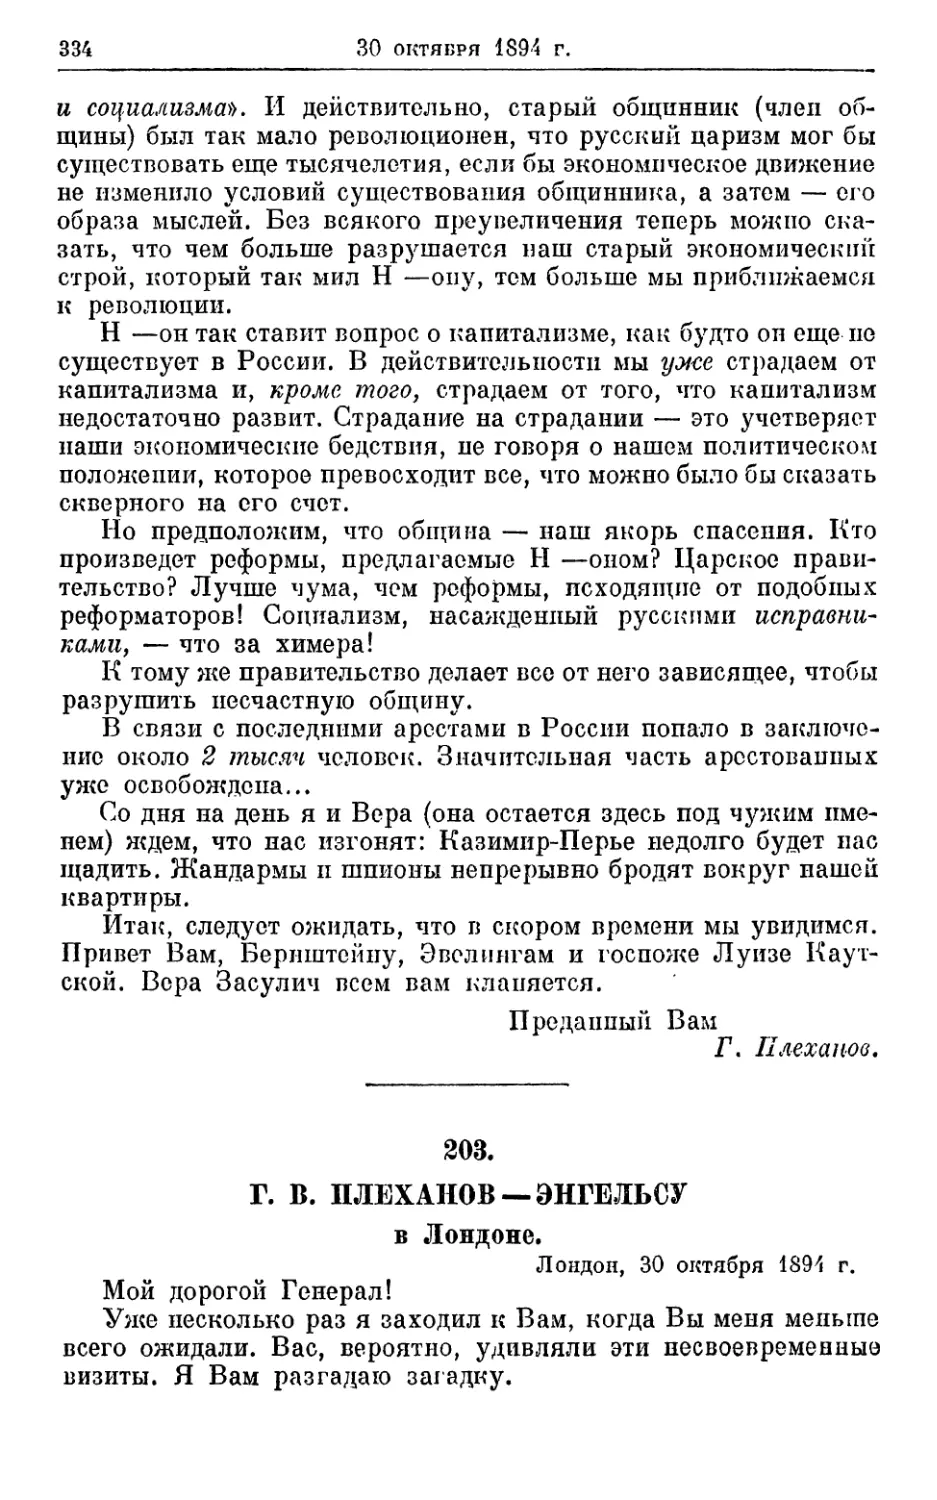 203. Плеханов — Энгельсу, 30 октября 1894г